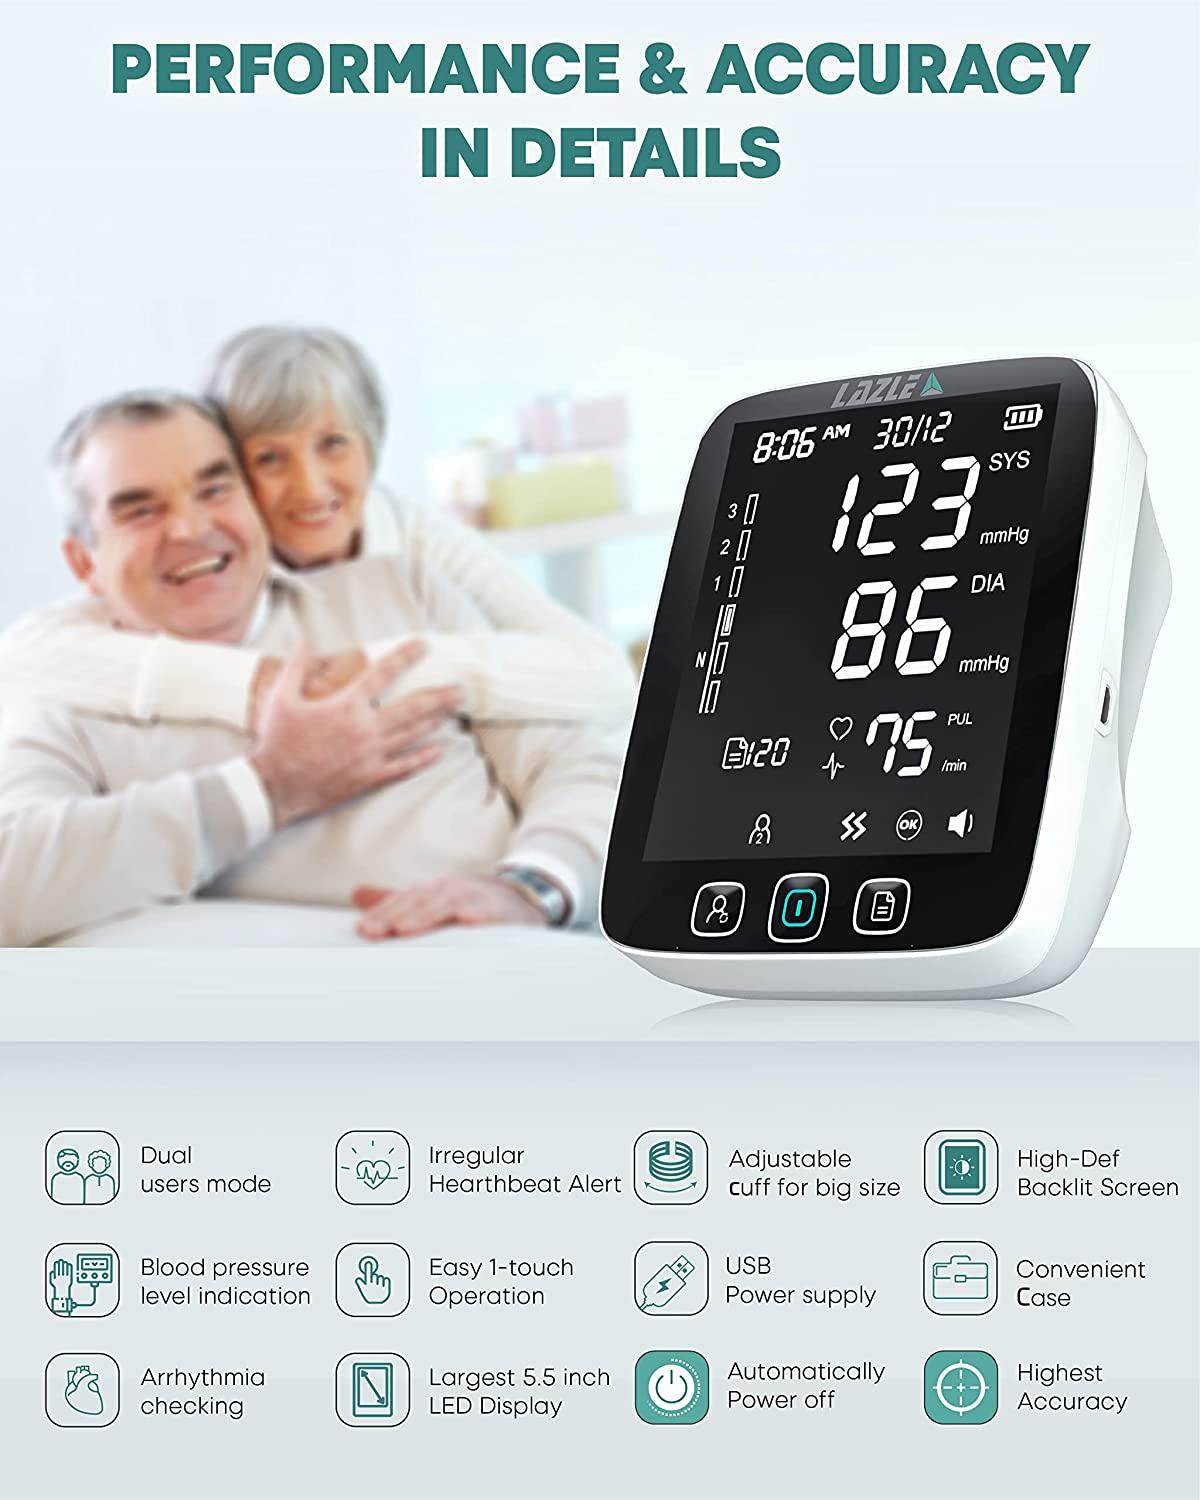 Blood Pressure Monitor Upper Arm BP Cuff Machine, Accurate